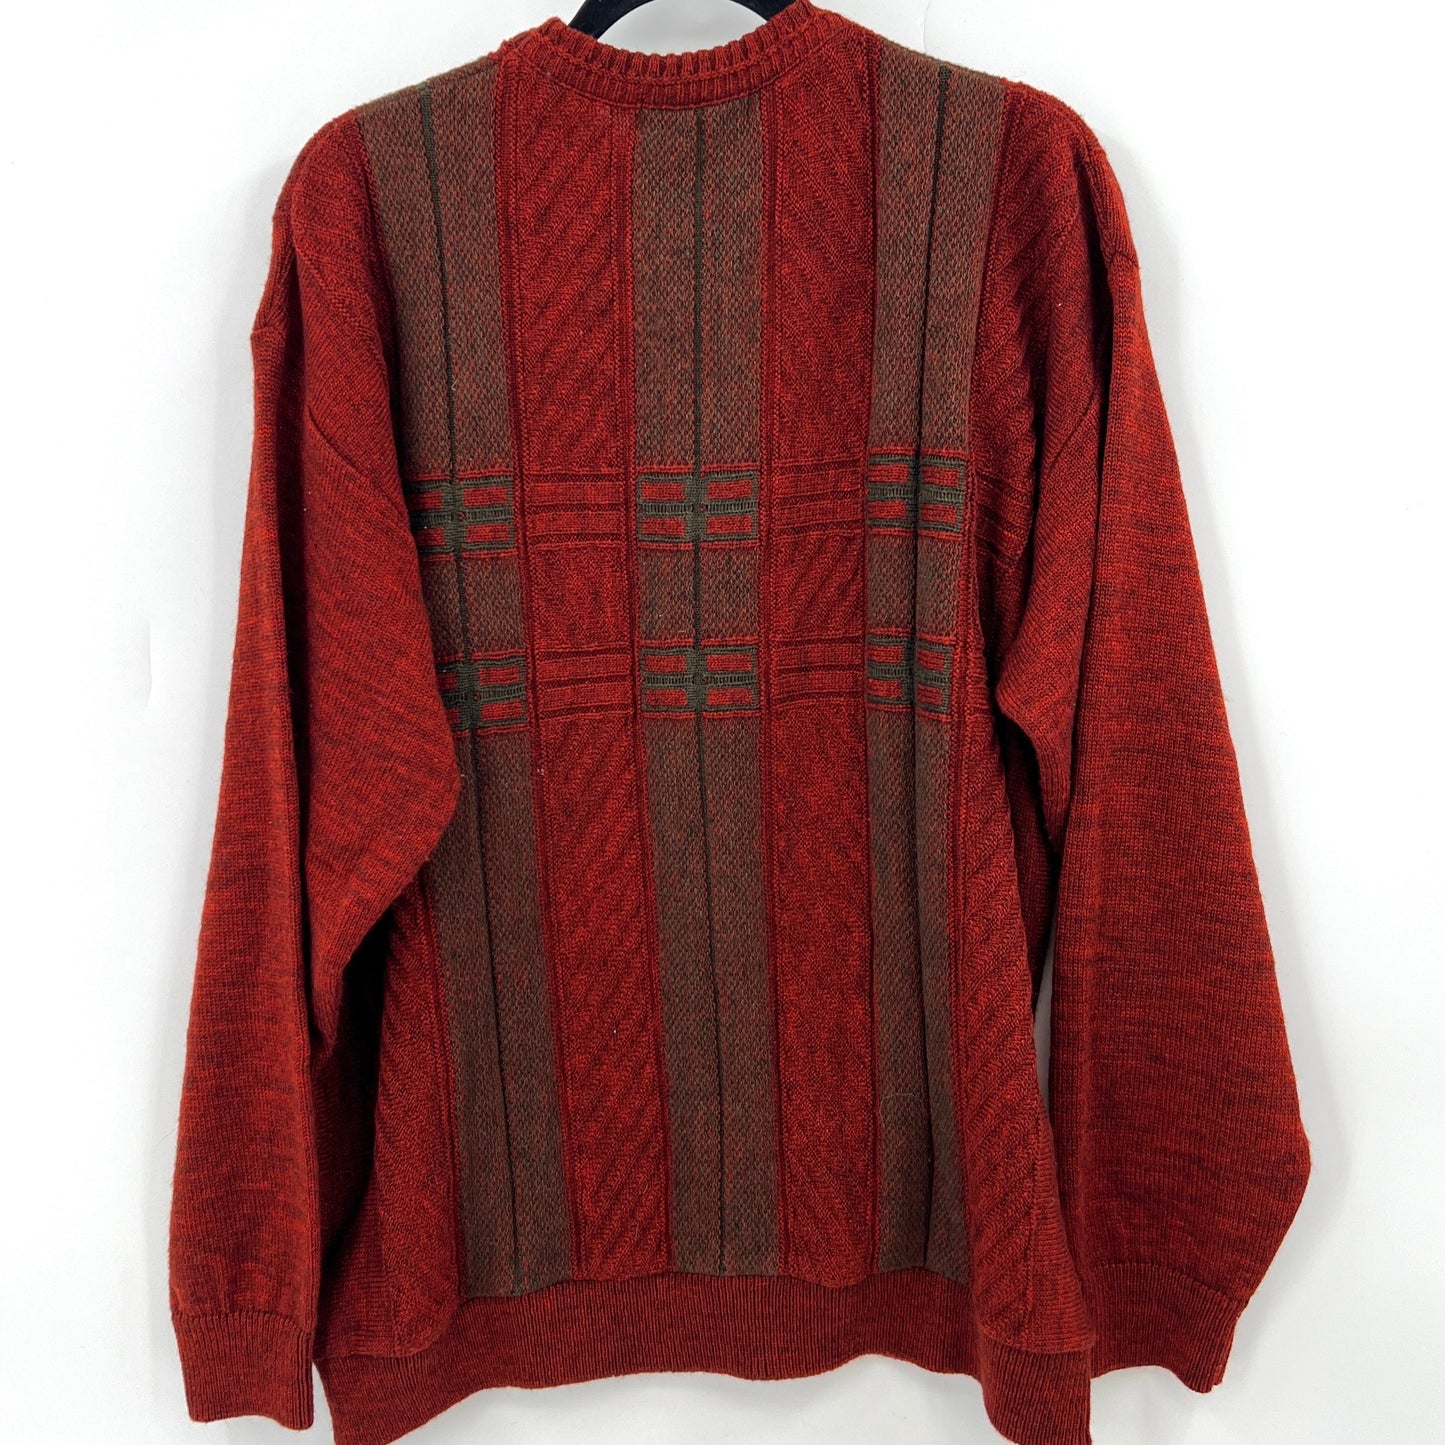 Vintage Cooper Knitwear Sweater XL